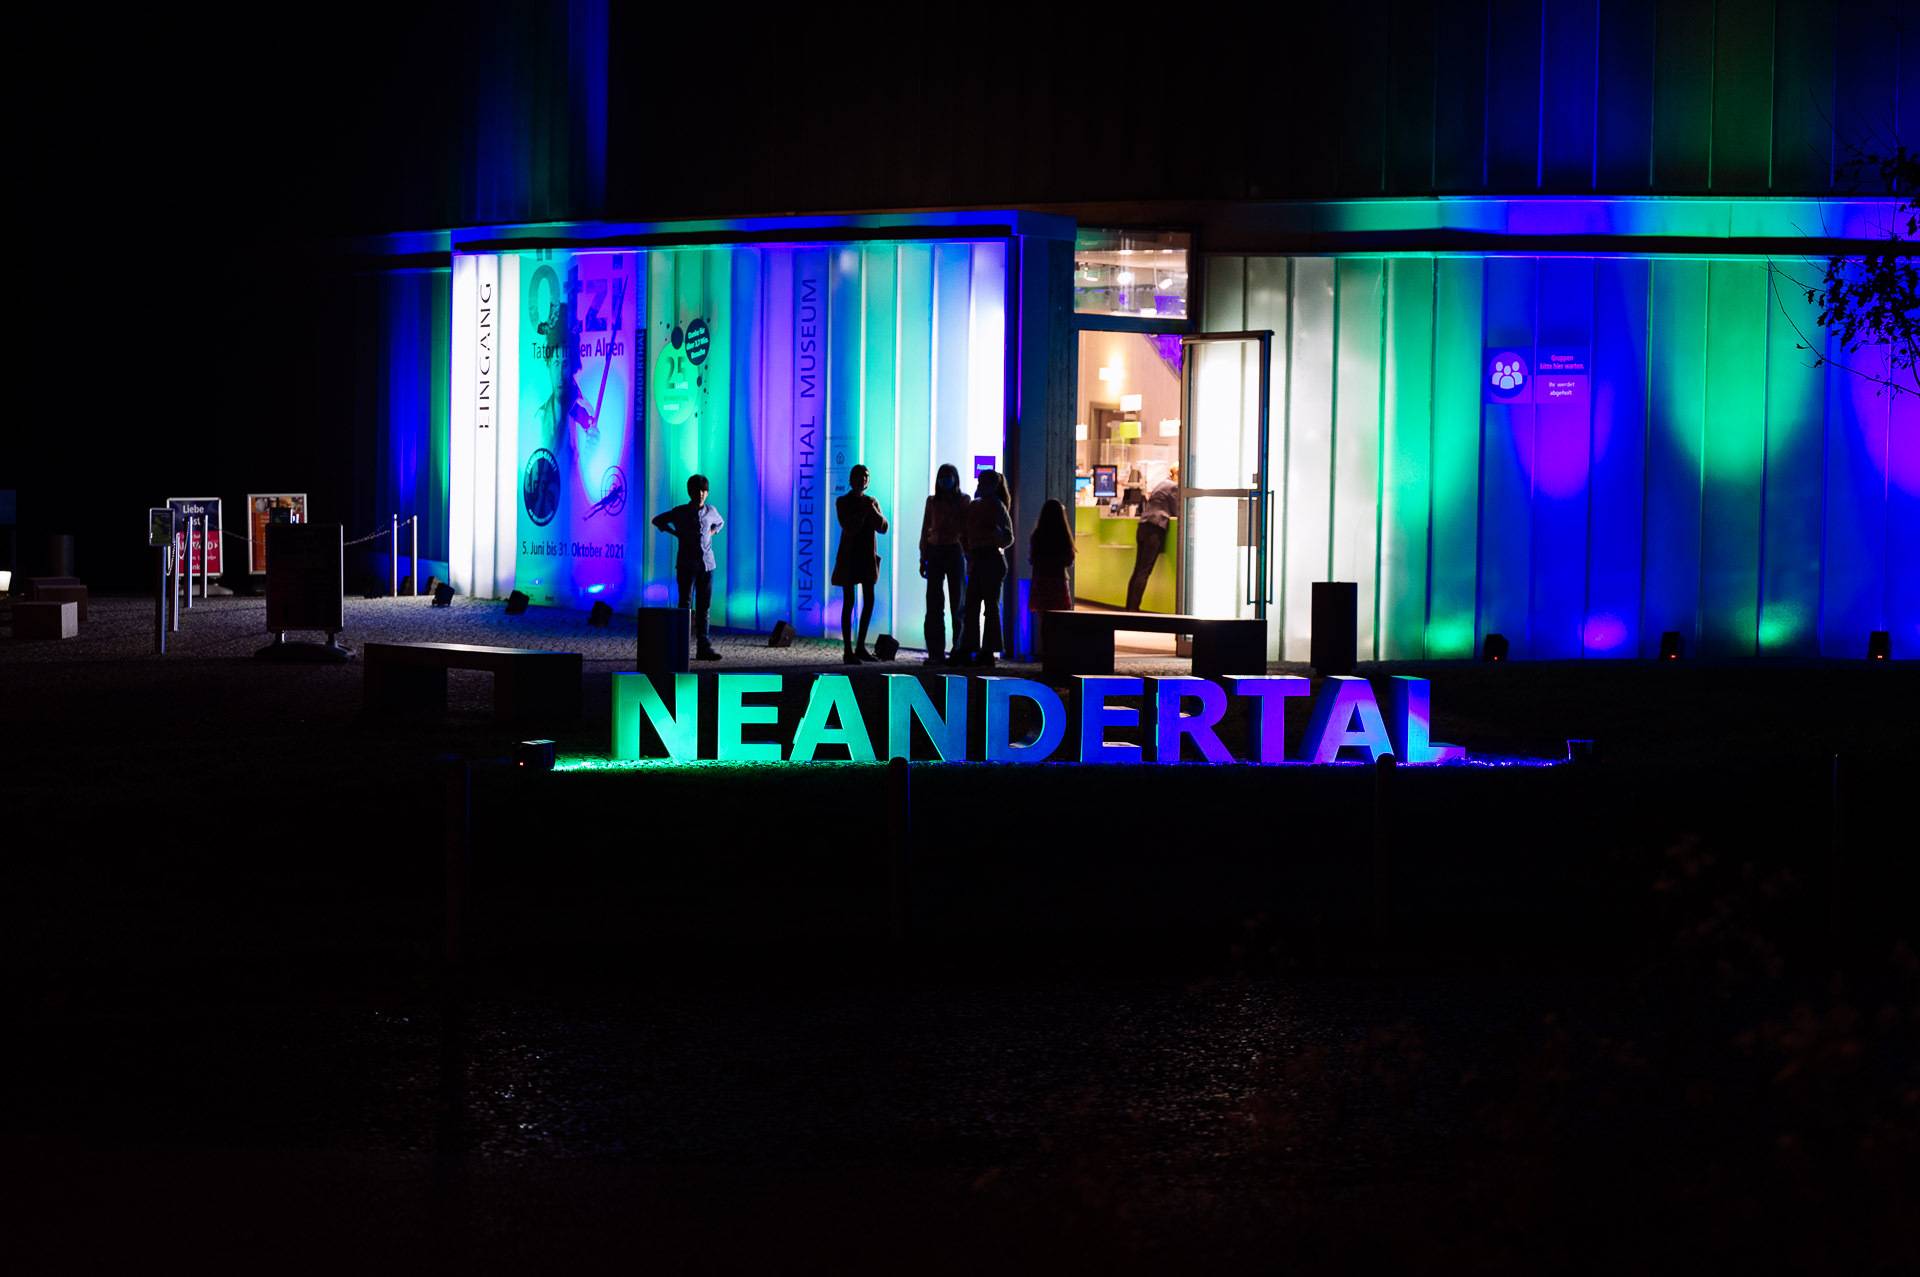 
Das Neanderthal Museum bei Nacht entdecken
